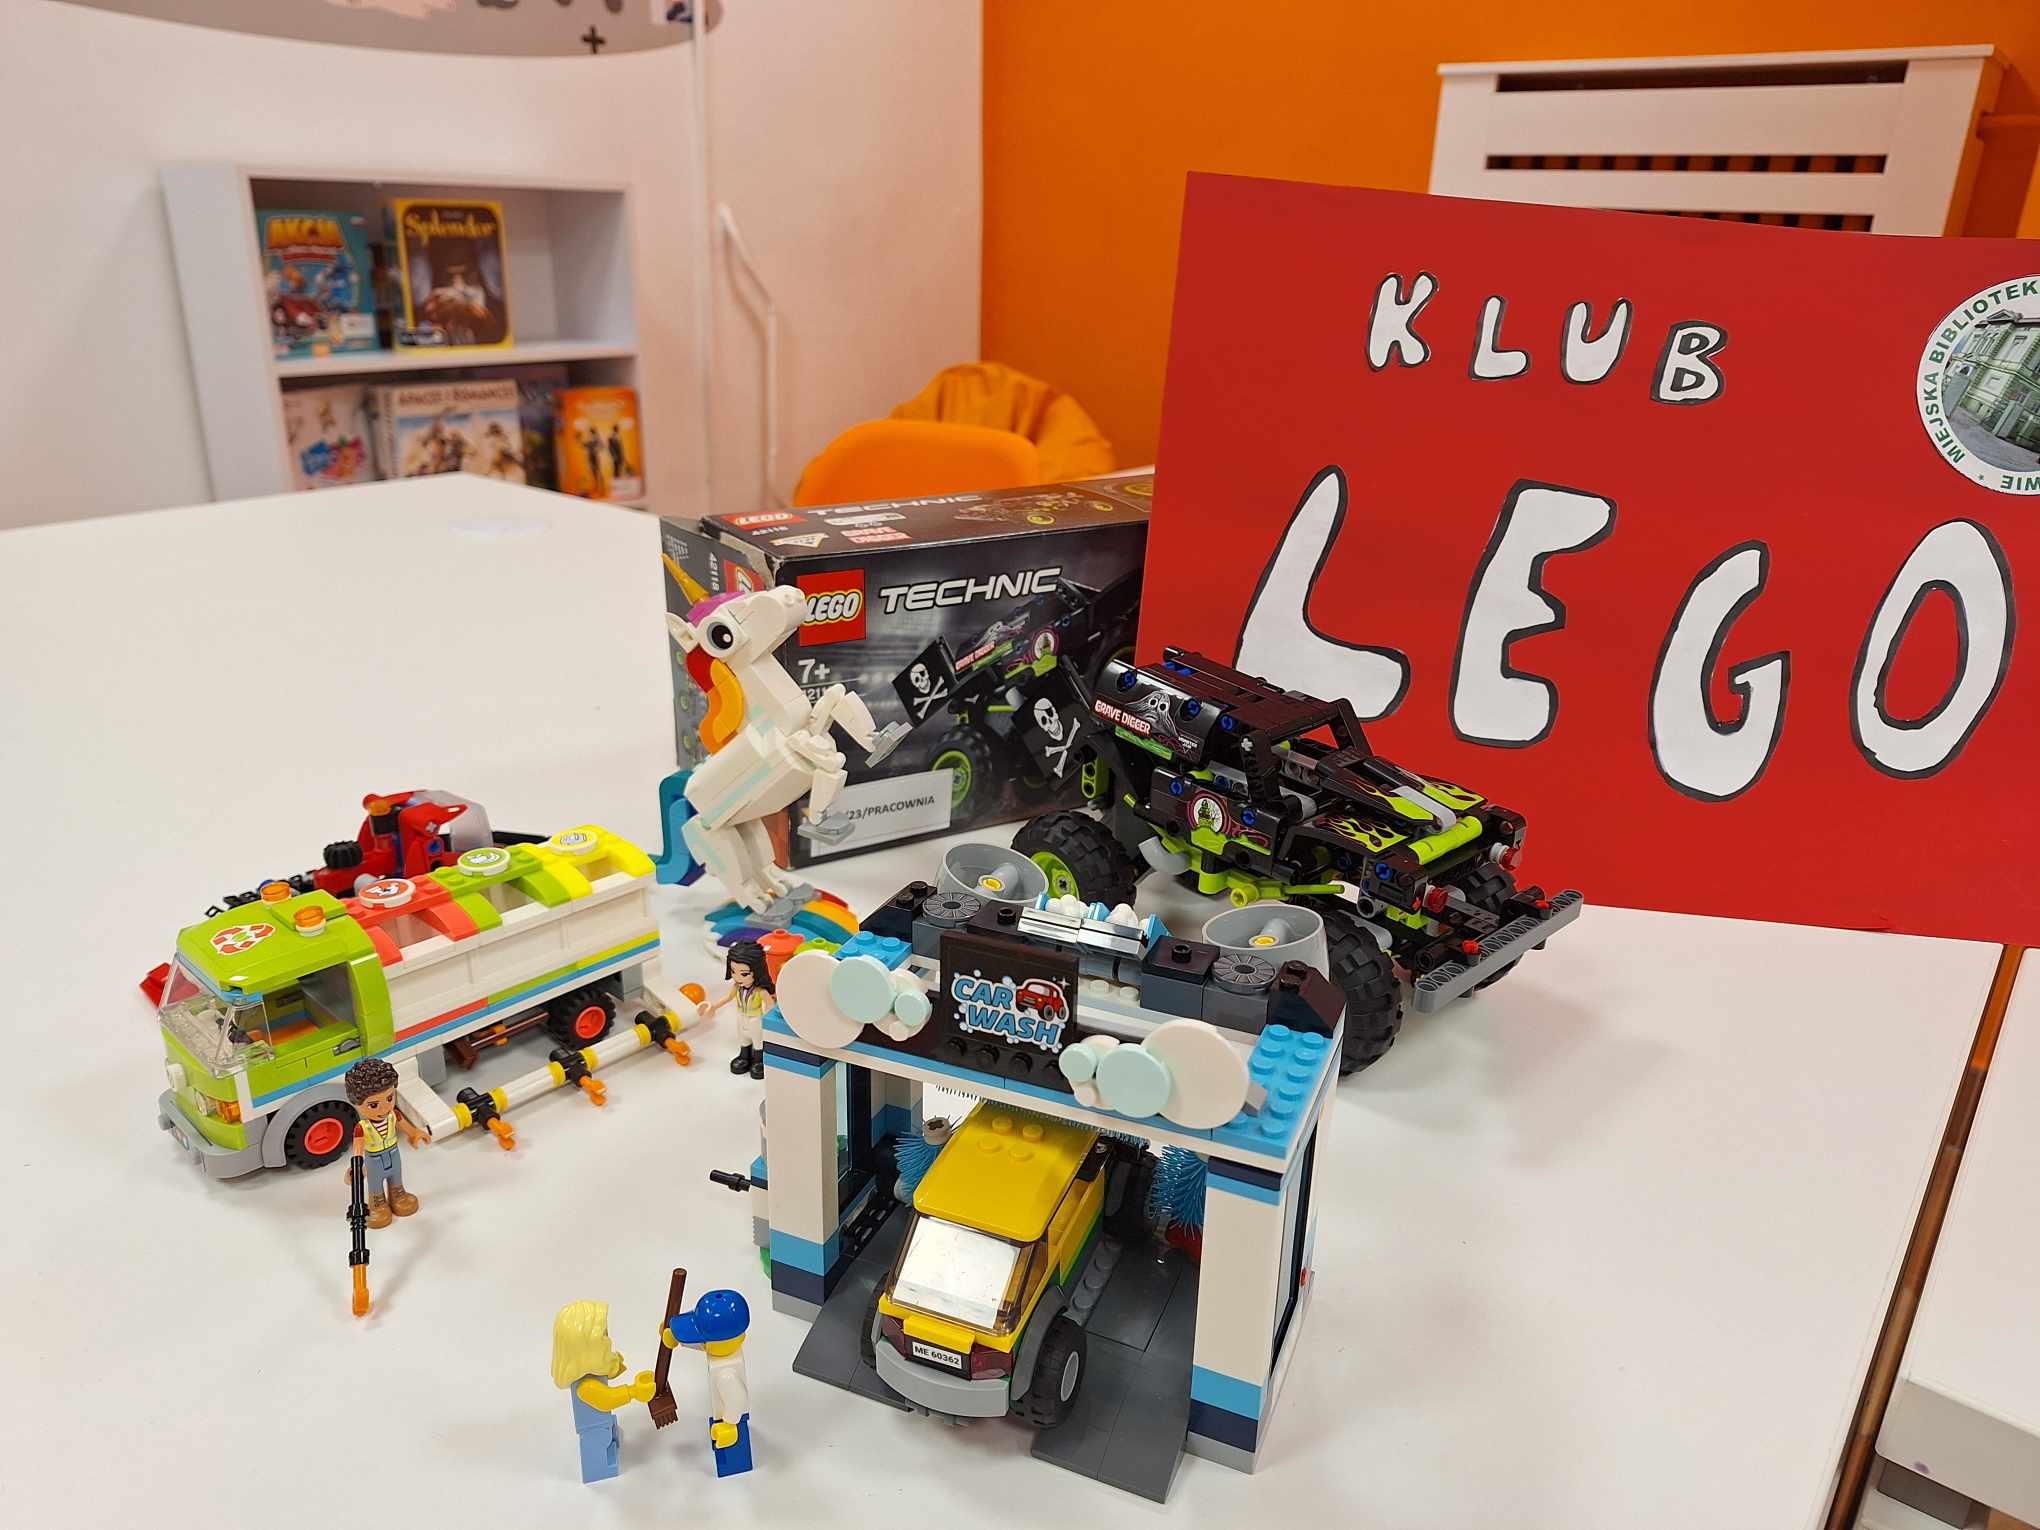 zdjęcie ułożonych modeli myjni samochodowej, śmieciarki i auta terenowego z klocków lego, z tyłu plakat klub lego i logo biblioteki